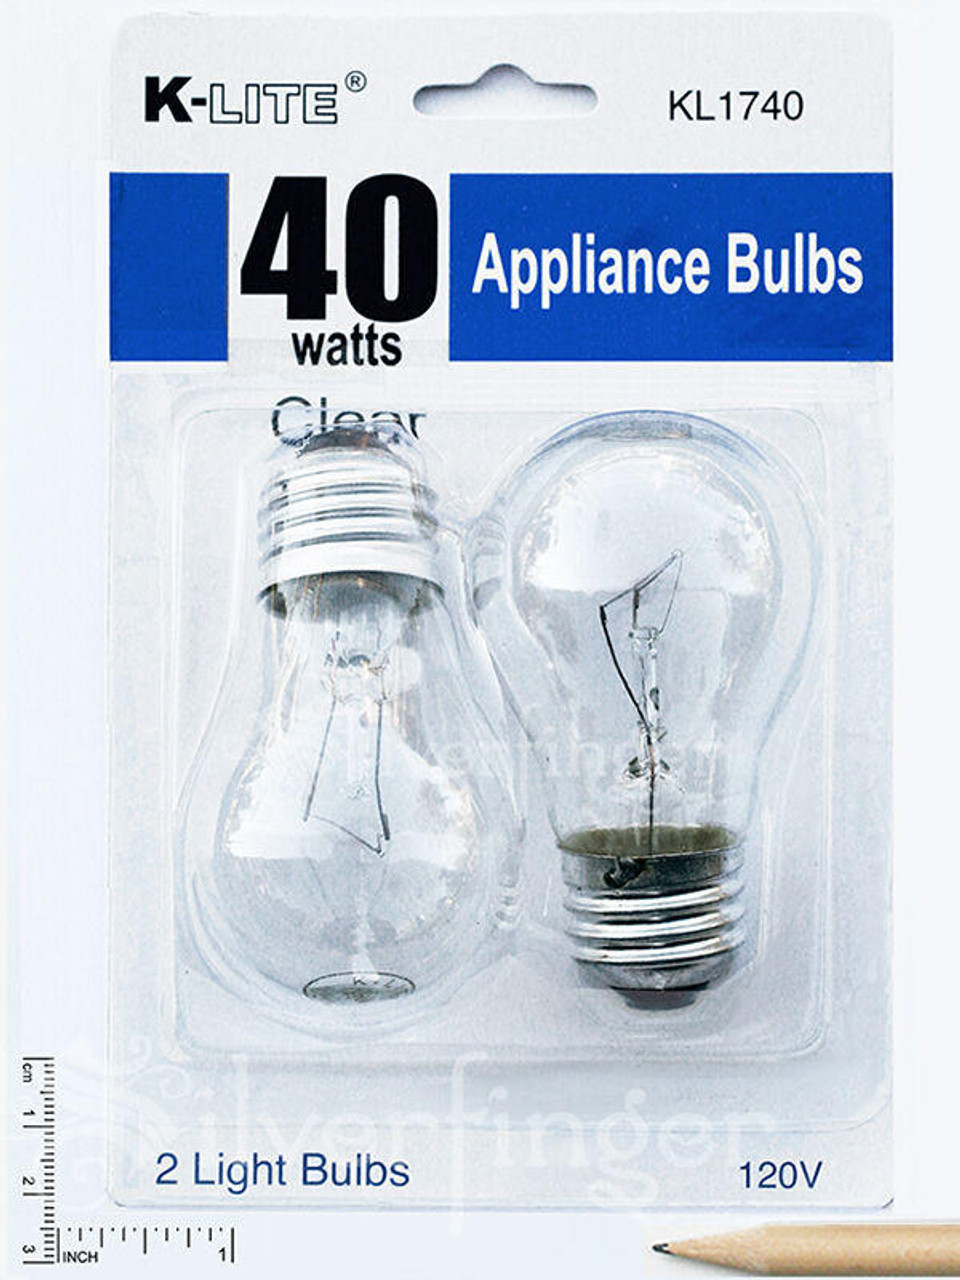 Microwave / Stove Hood Light Bulb